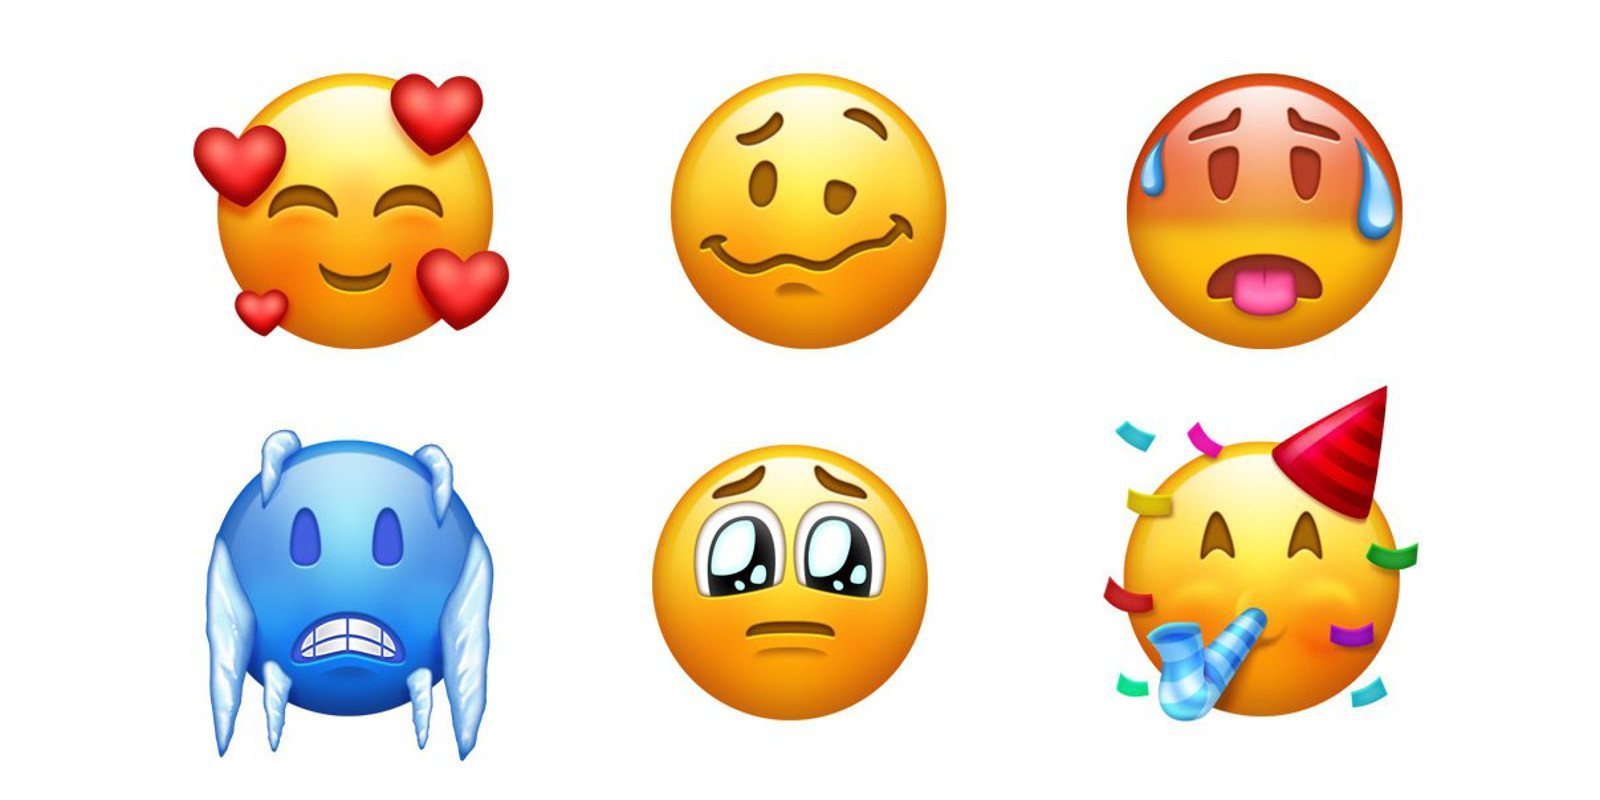 Si tienes Android, pronto tendrás 157 nuevos emojis en tu smartphone